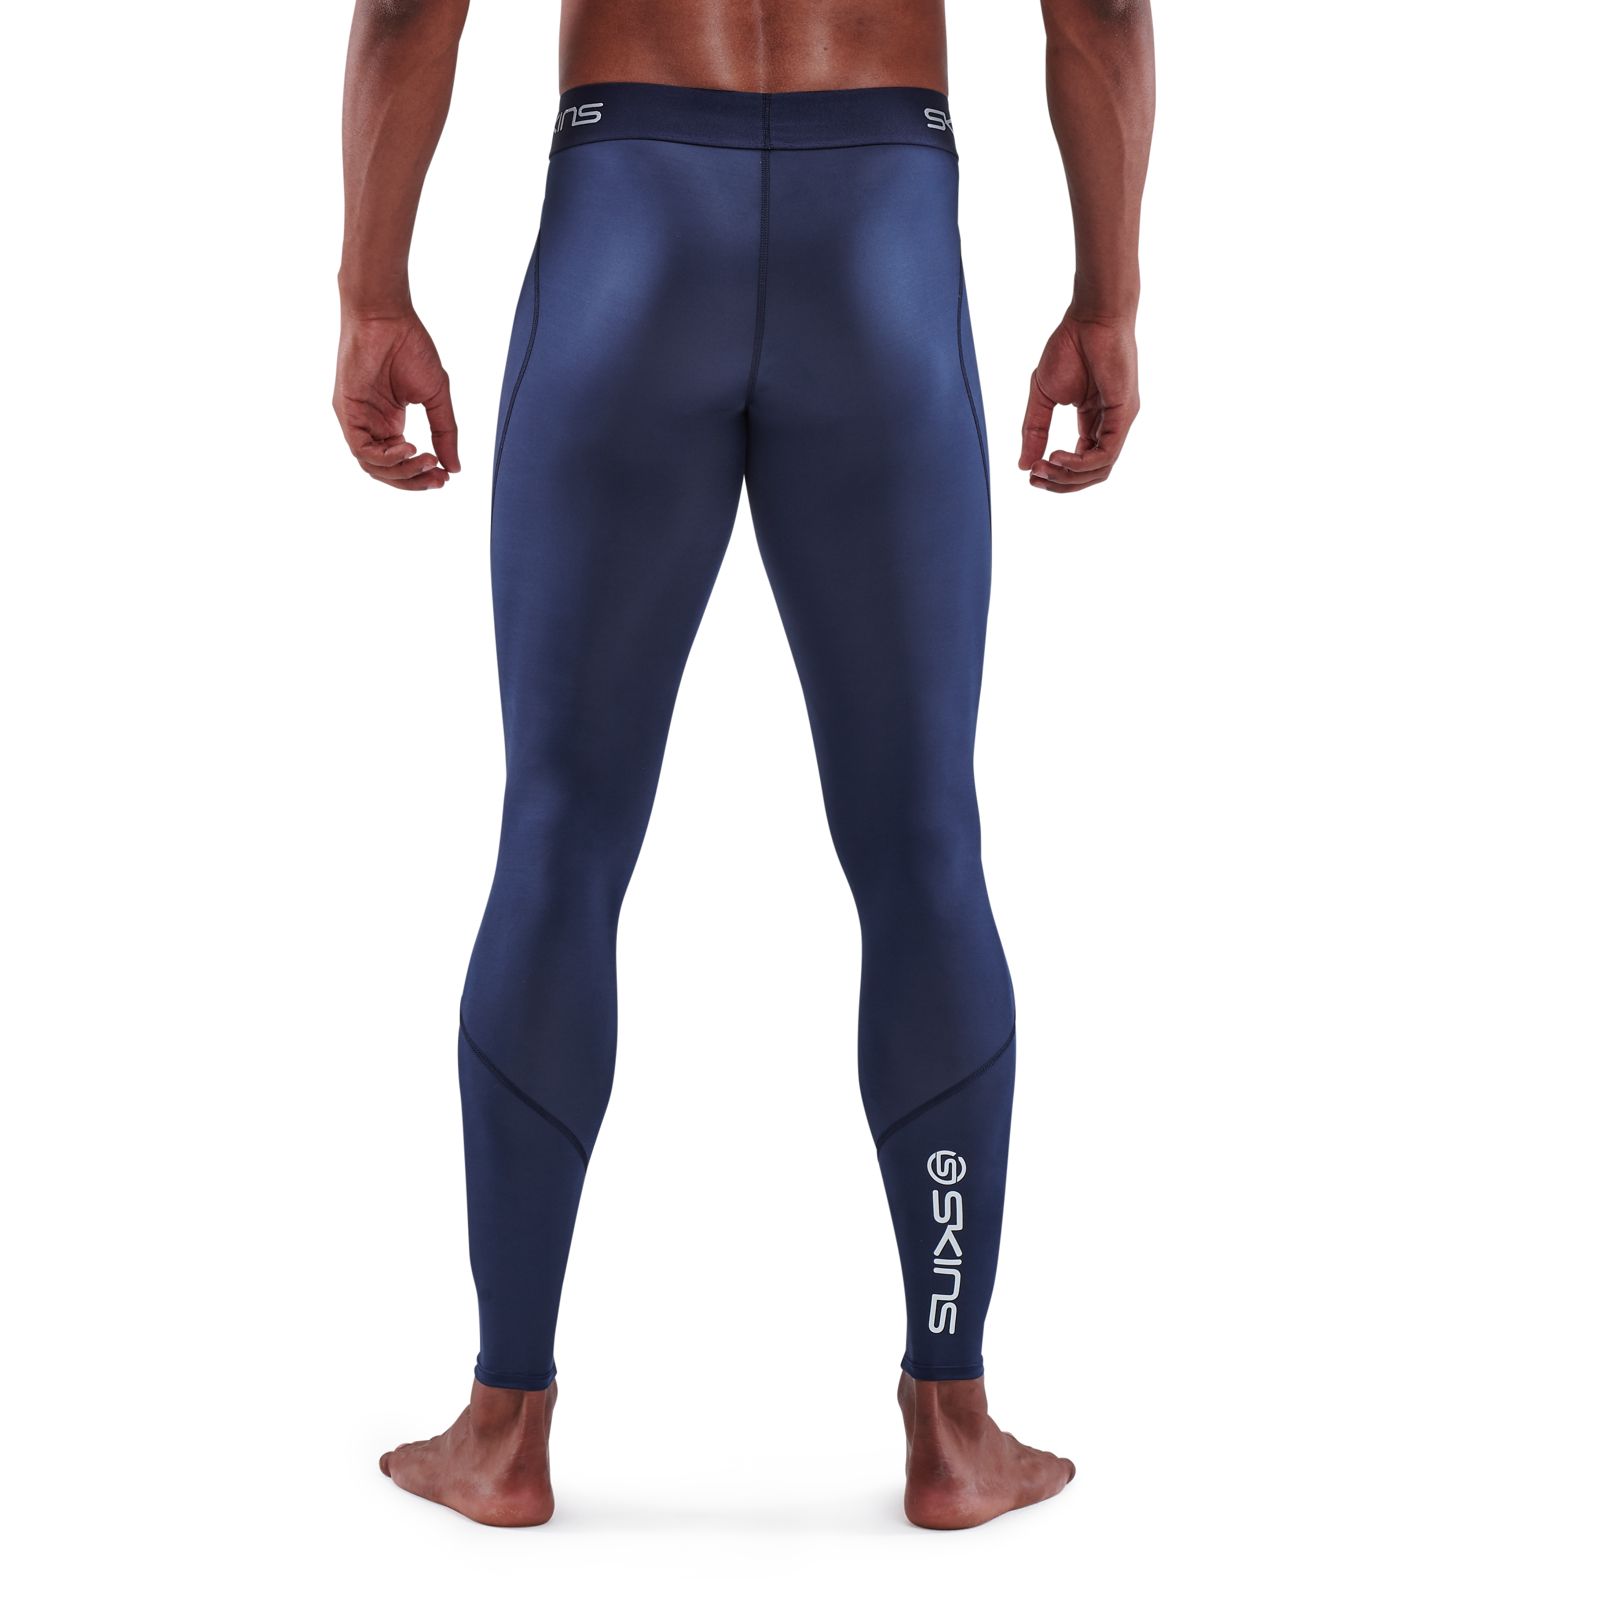 SKINS SERIES-1 Men's Shorts Black – Skins Compression Australia